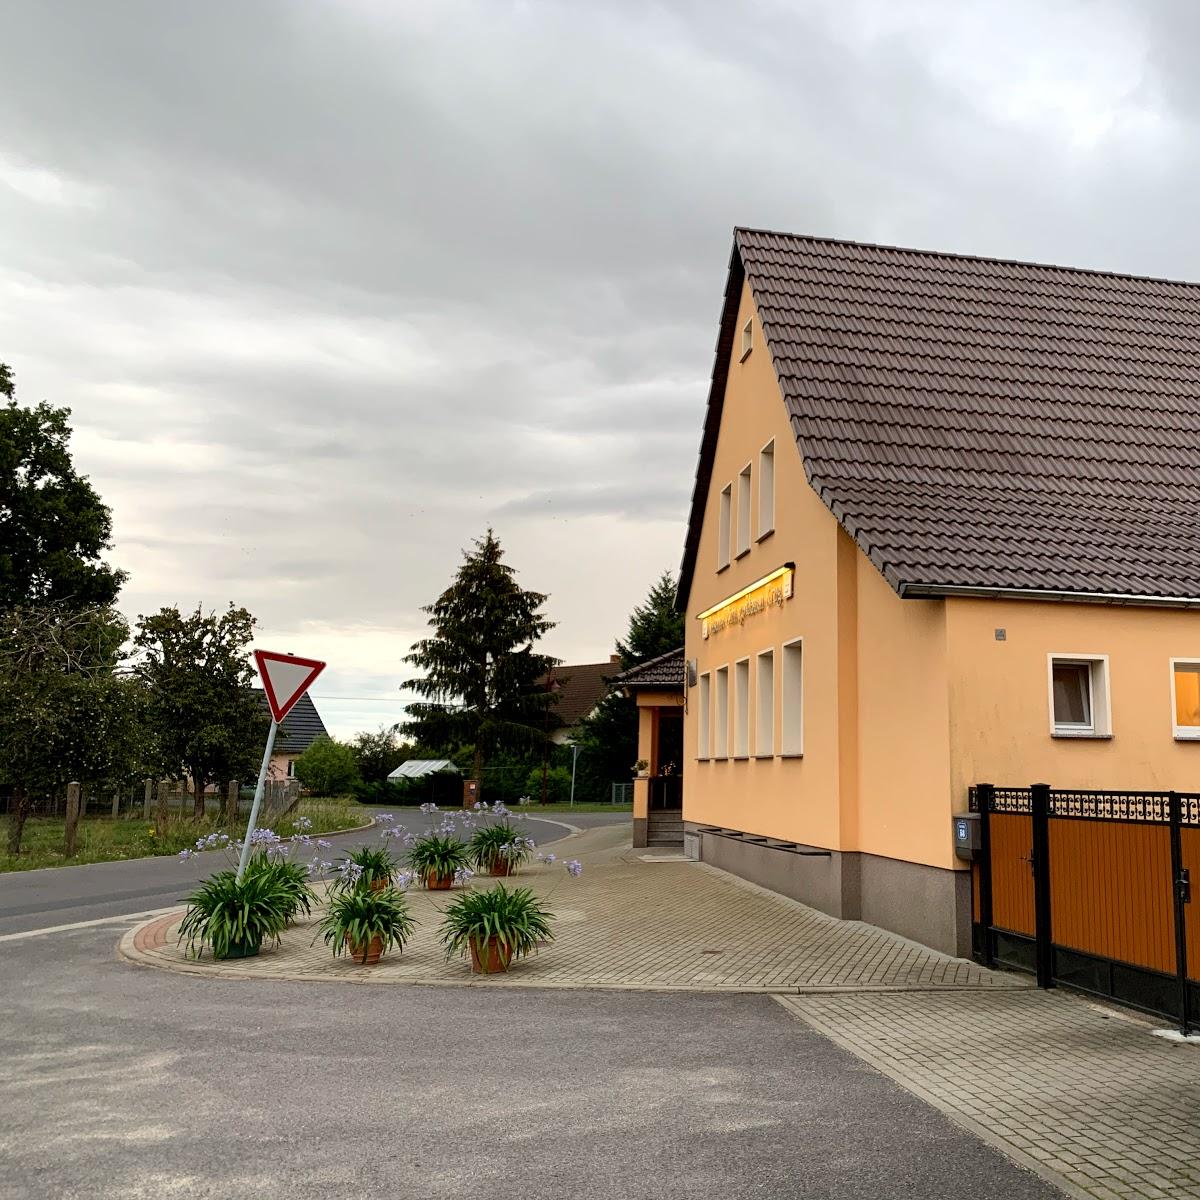 Restaurant "Gaststätte Zum goldenen Krug" in Turnow-Preilack